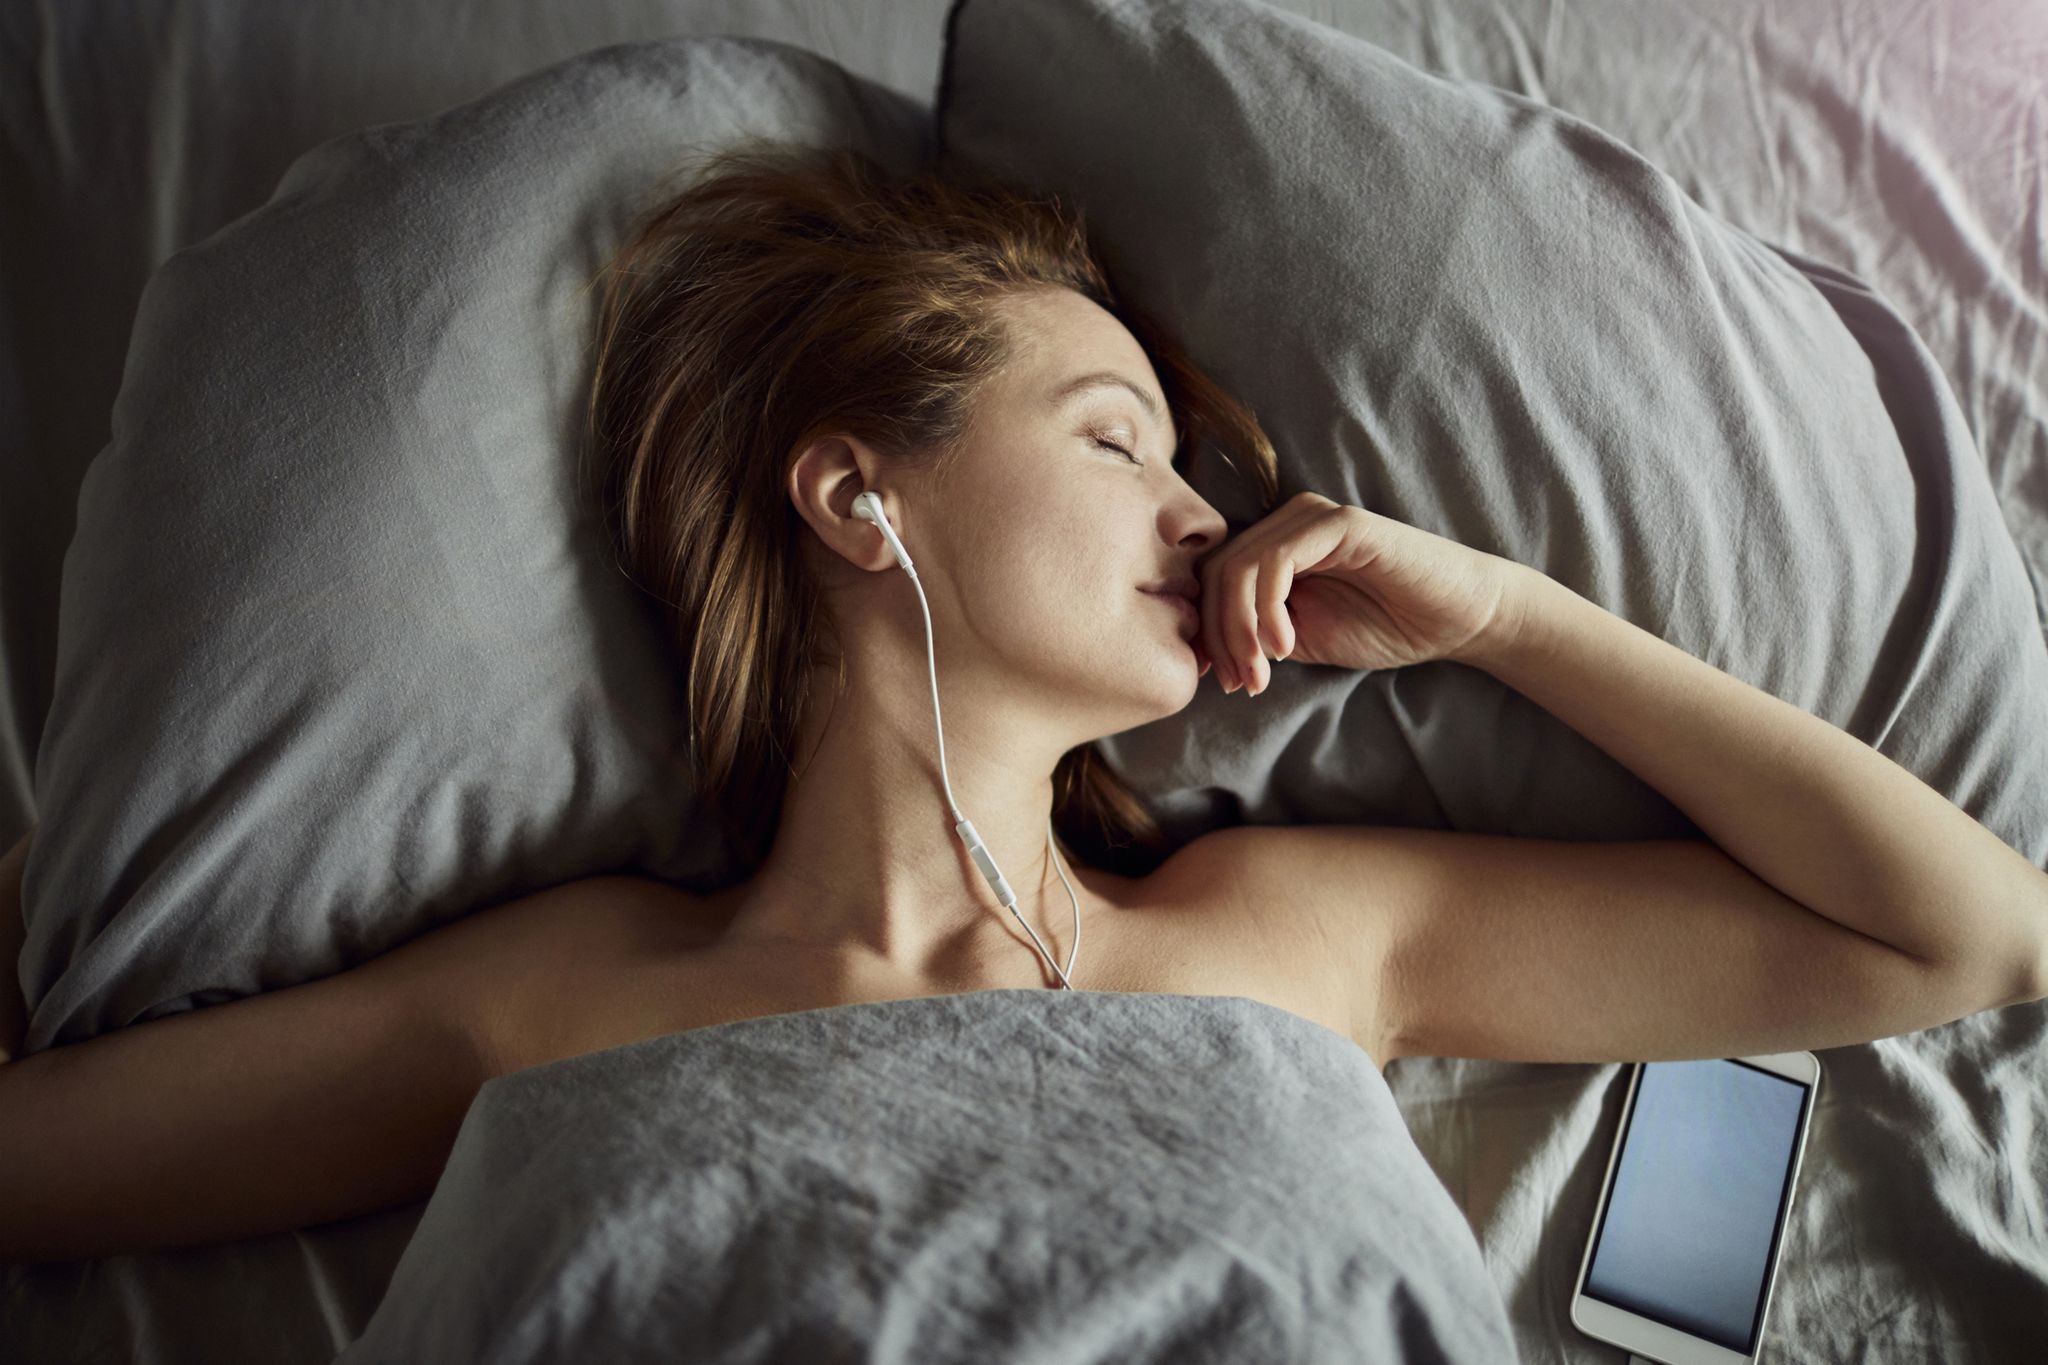 Estos auriculares para dormir son la solución perfecta contra el insomnio:  no oprimen los oídos y te aislarán del ruido exterior